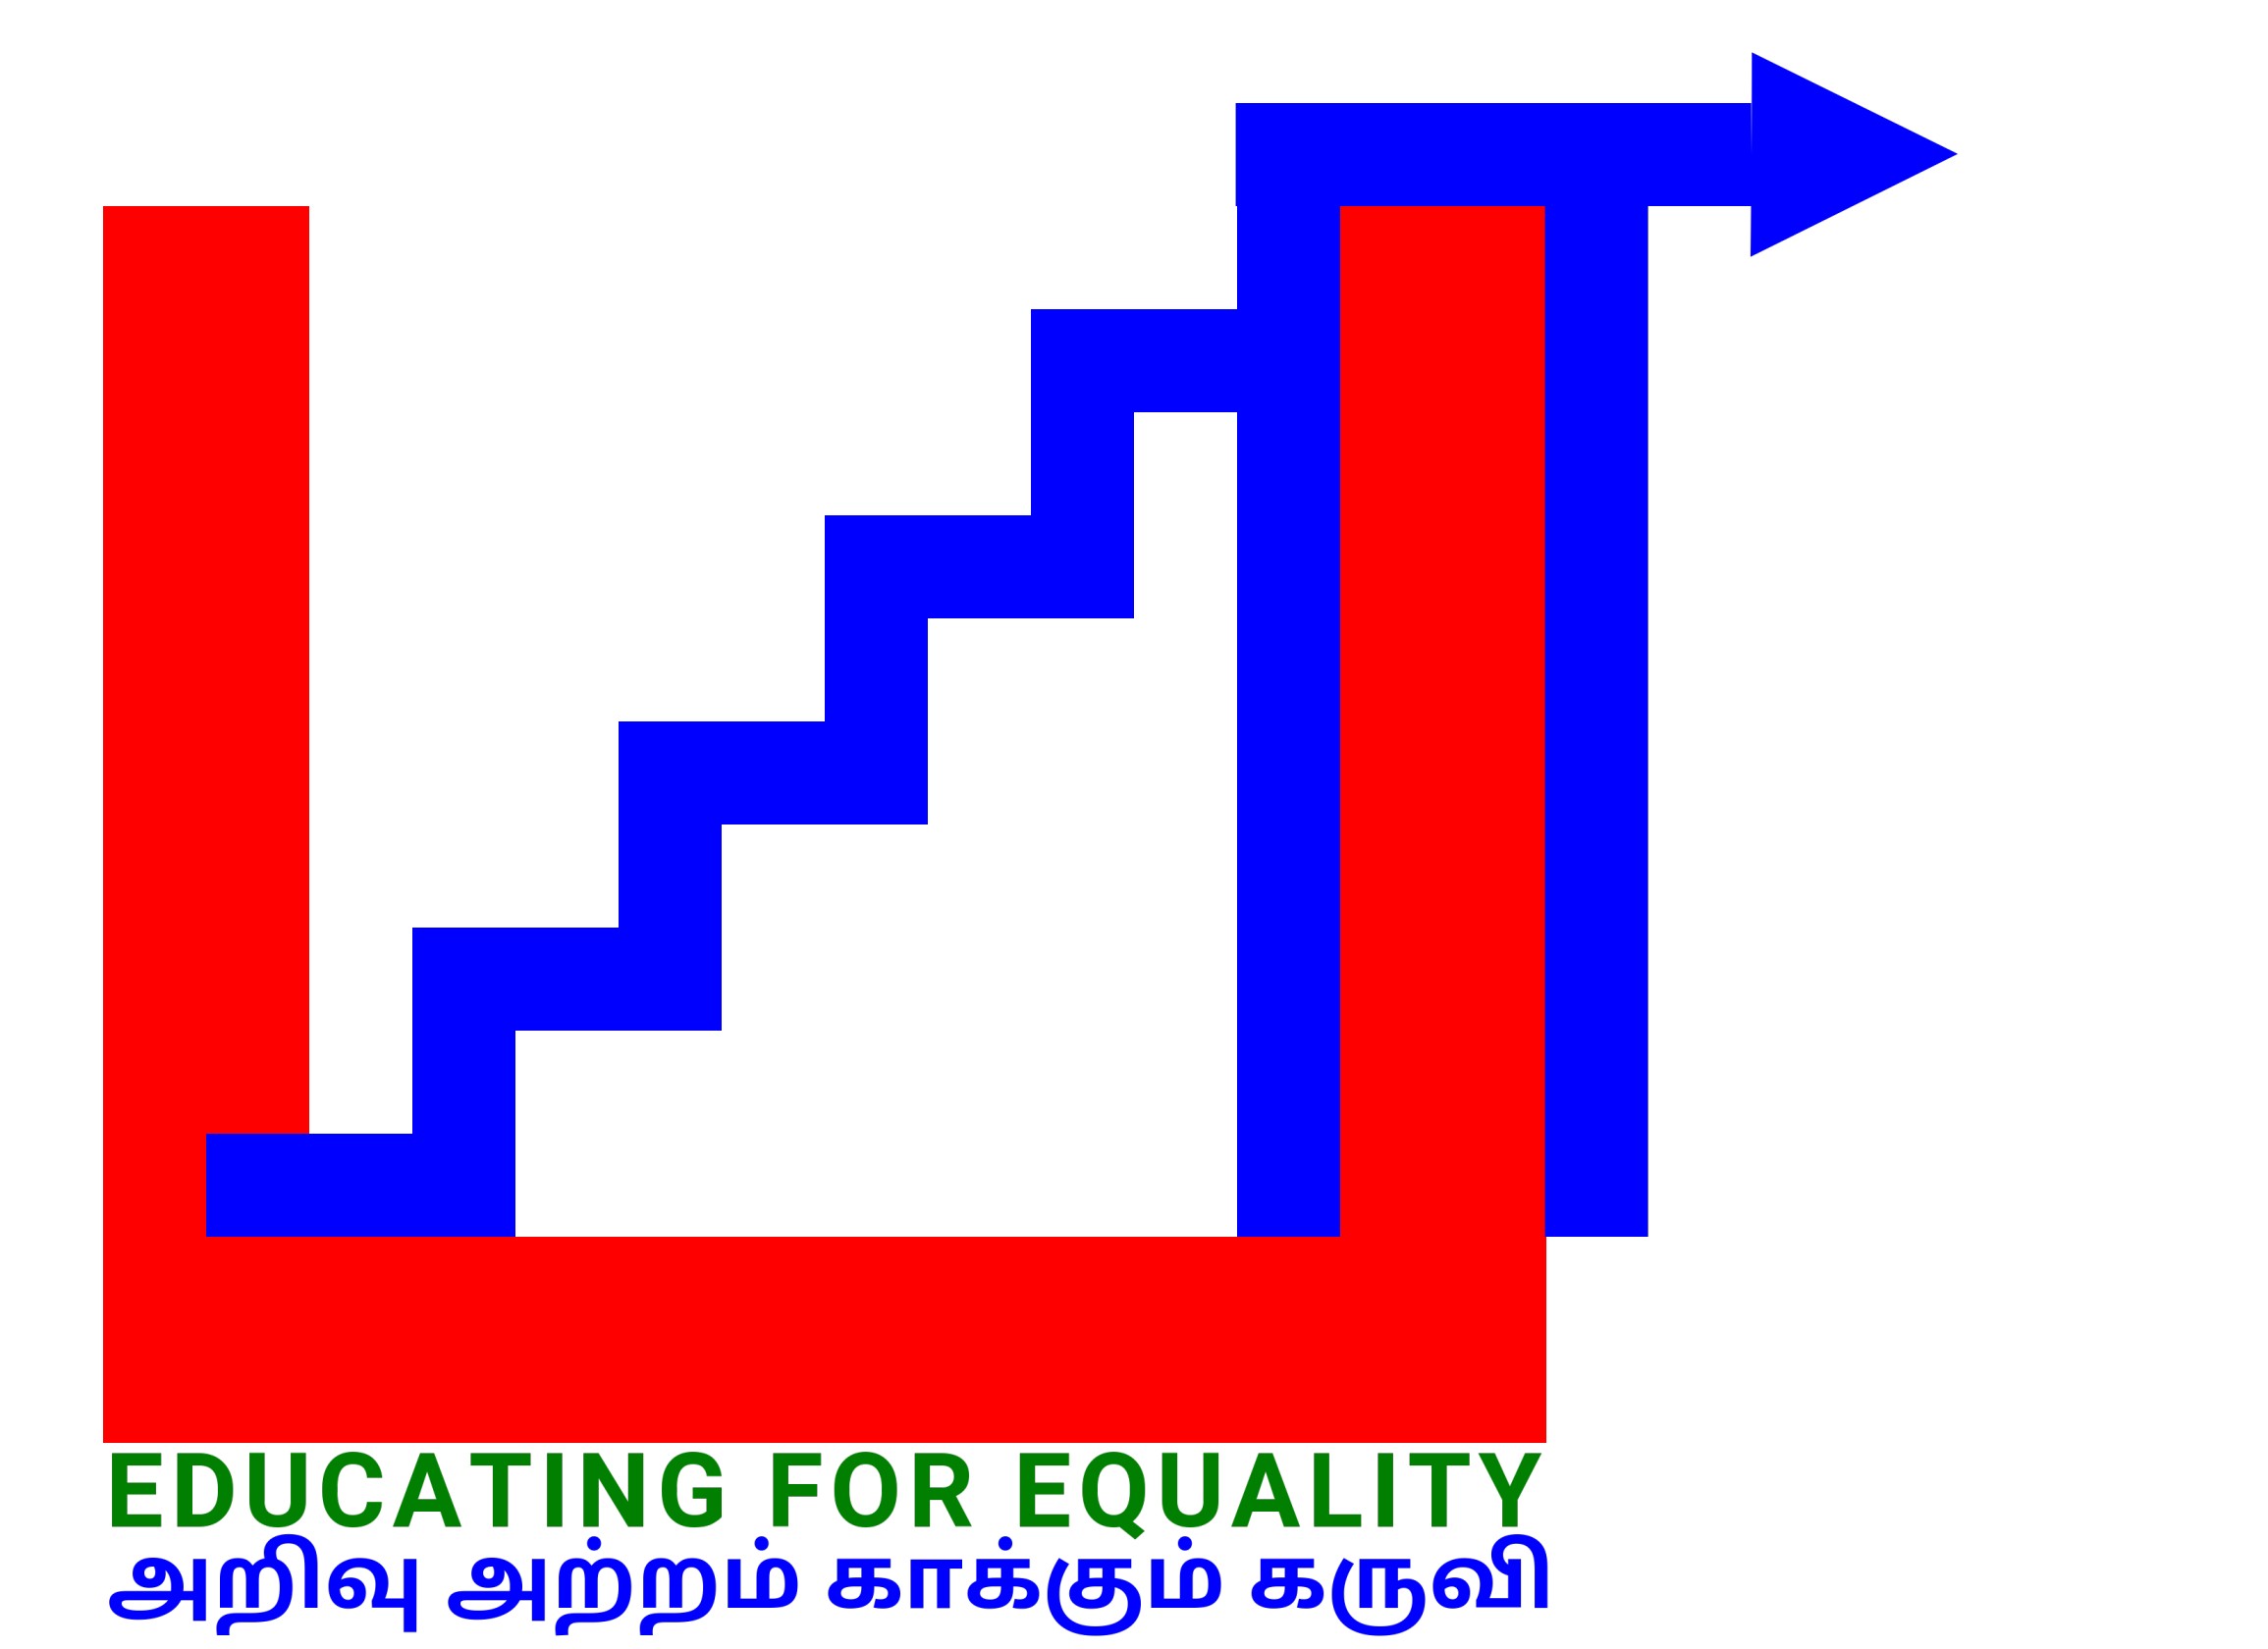 Bala - Education for equality